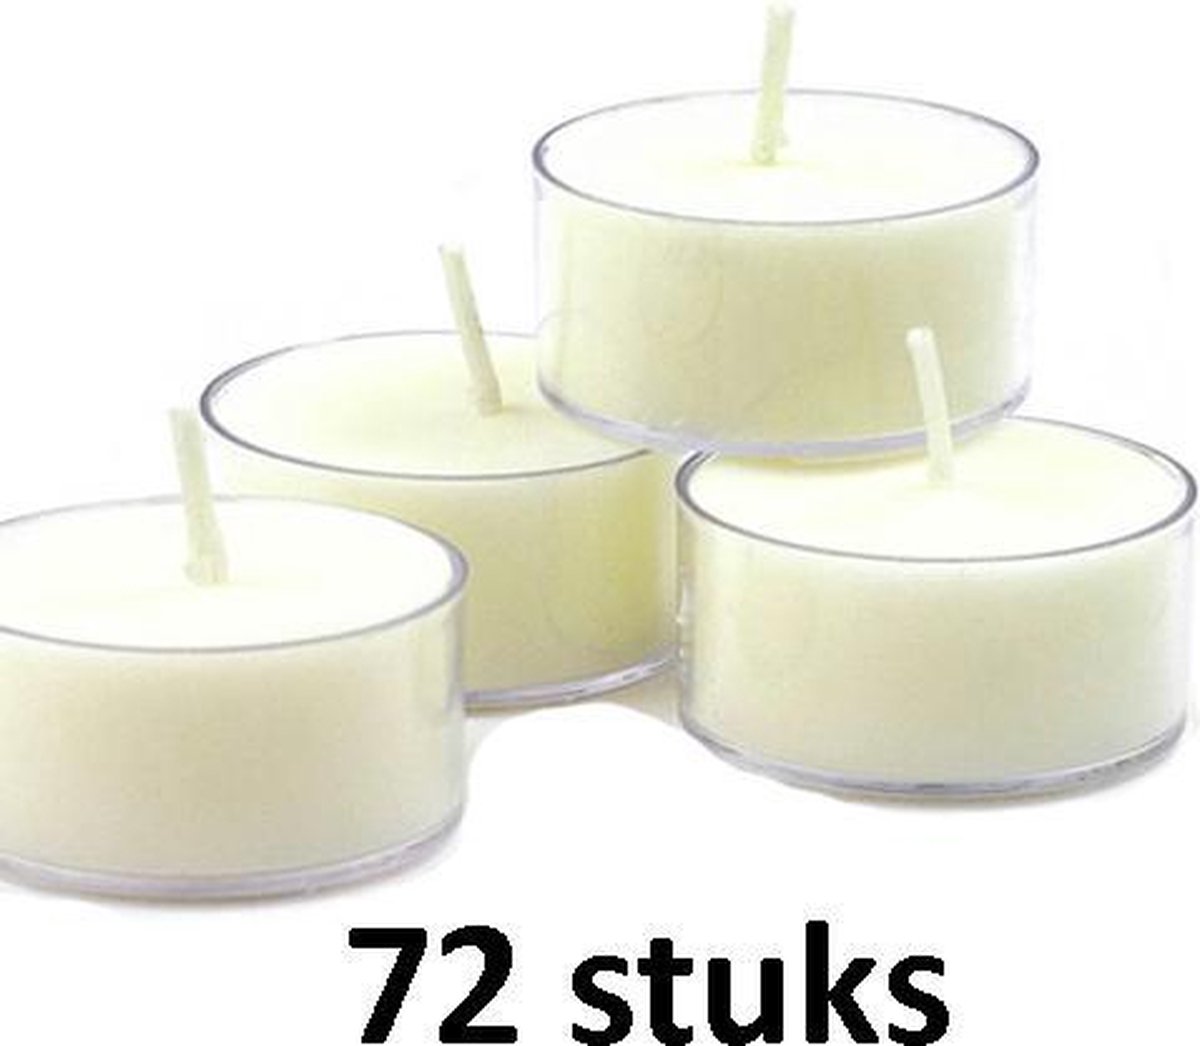 Wizard Toneelschrijver Verwarren 72 stuks witte 8-uurs maxi waxinelichtjes in doorzichtige cups | bol.com